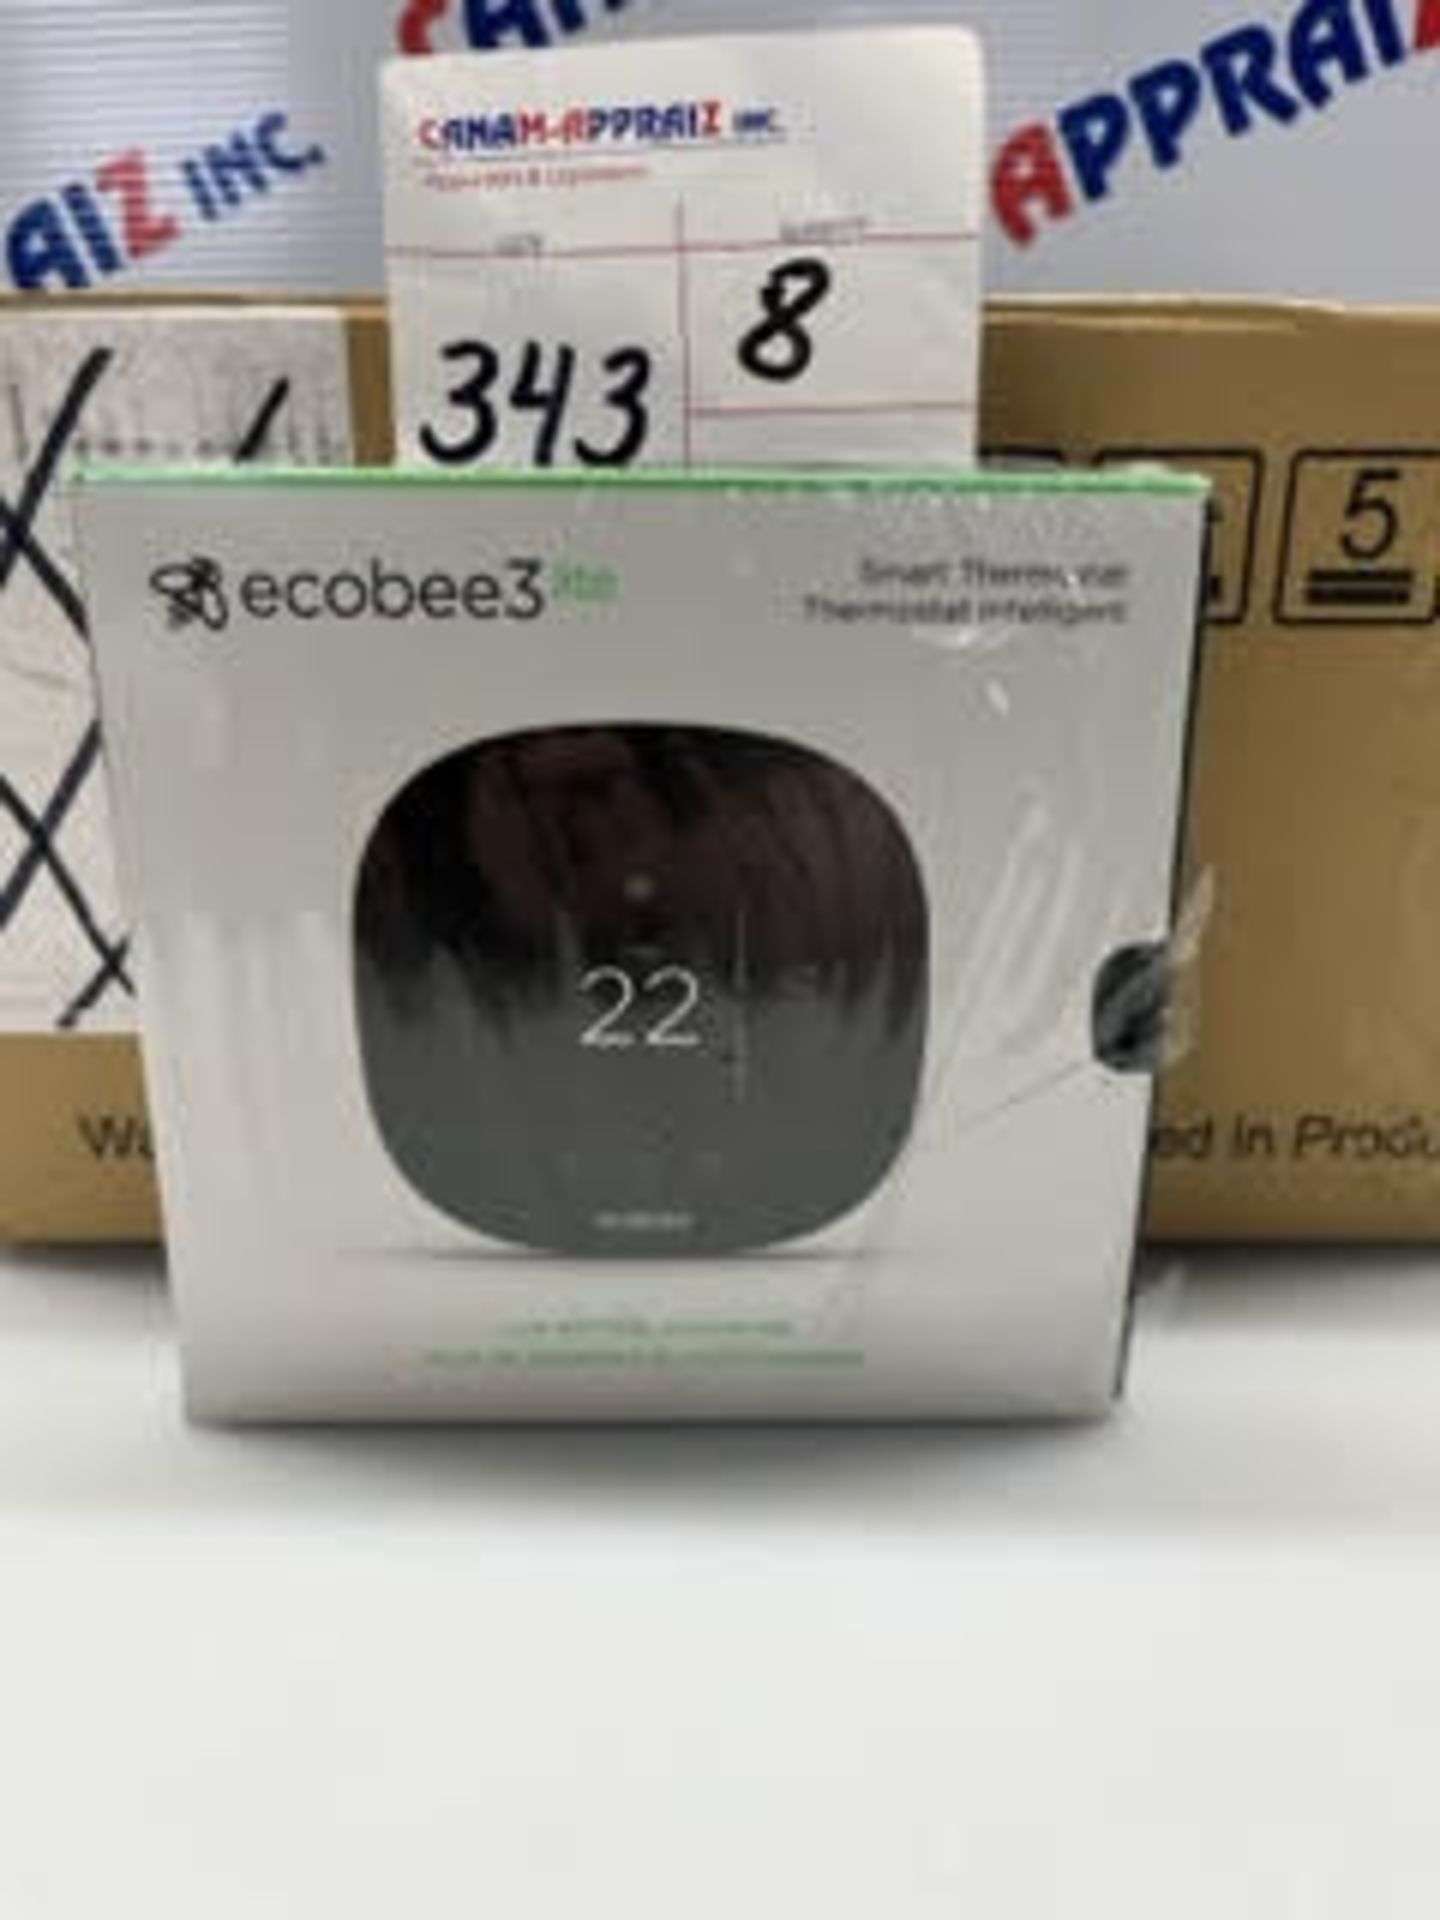 Ecobee3lite - Smart Thermostat - Quantity: X8